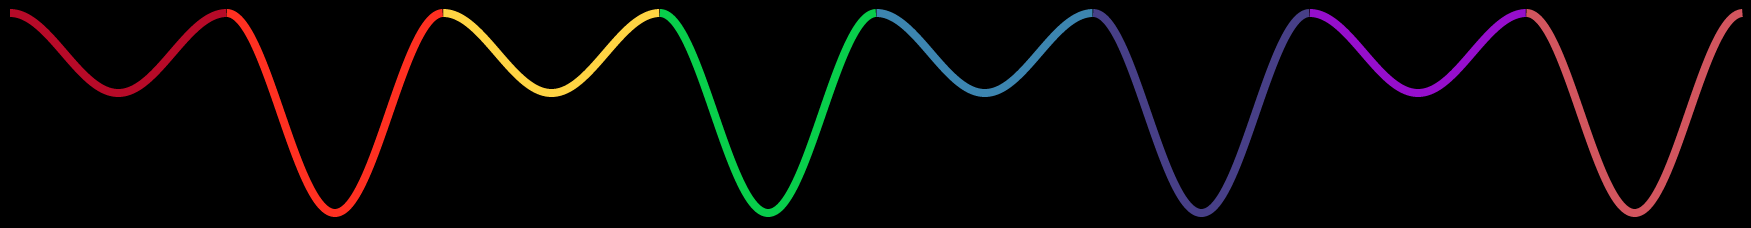 pulsing sine wave